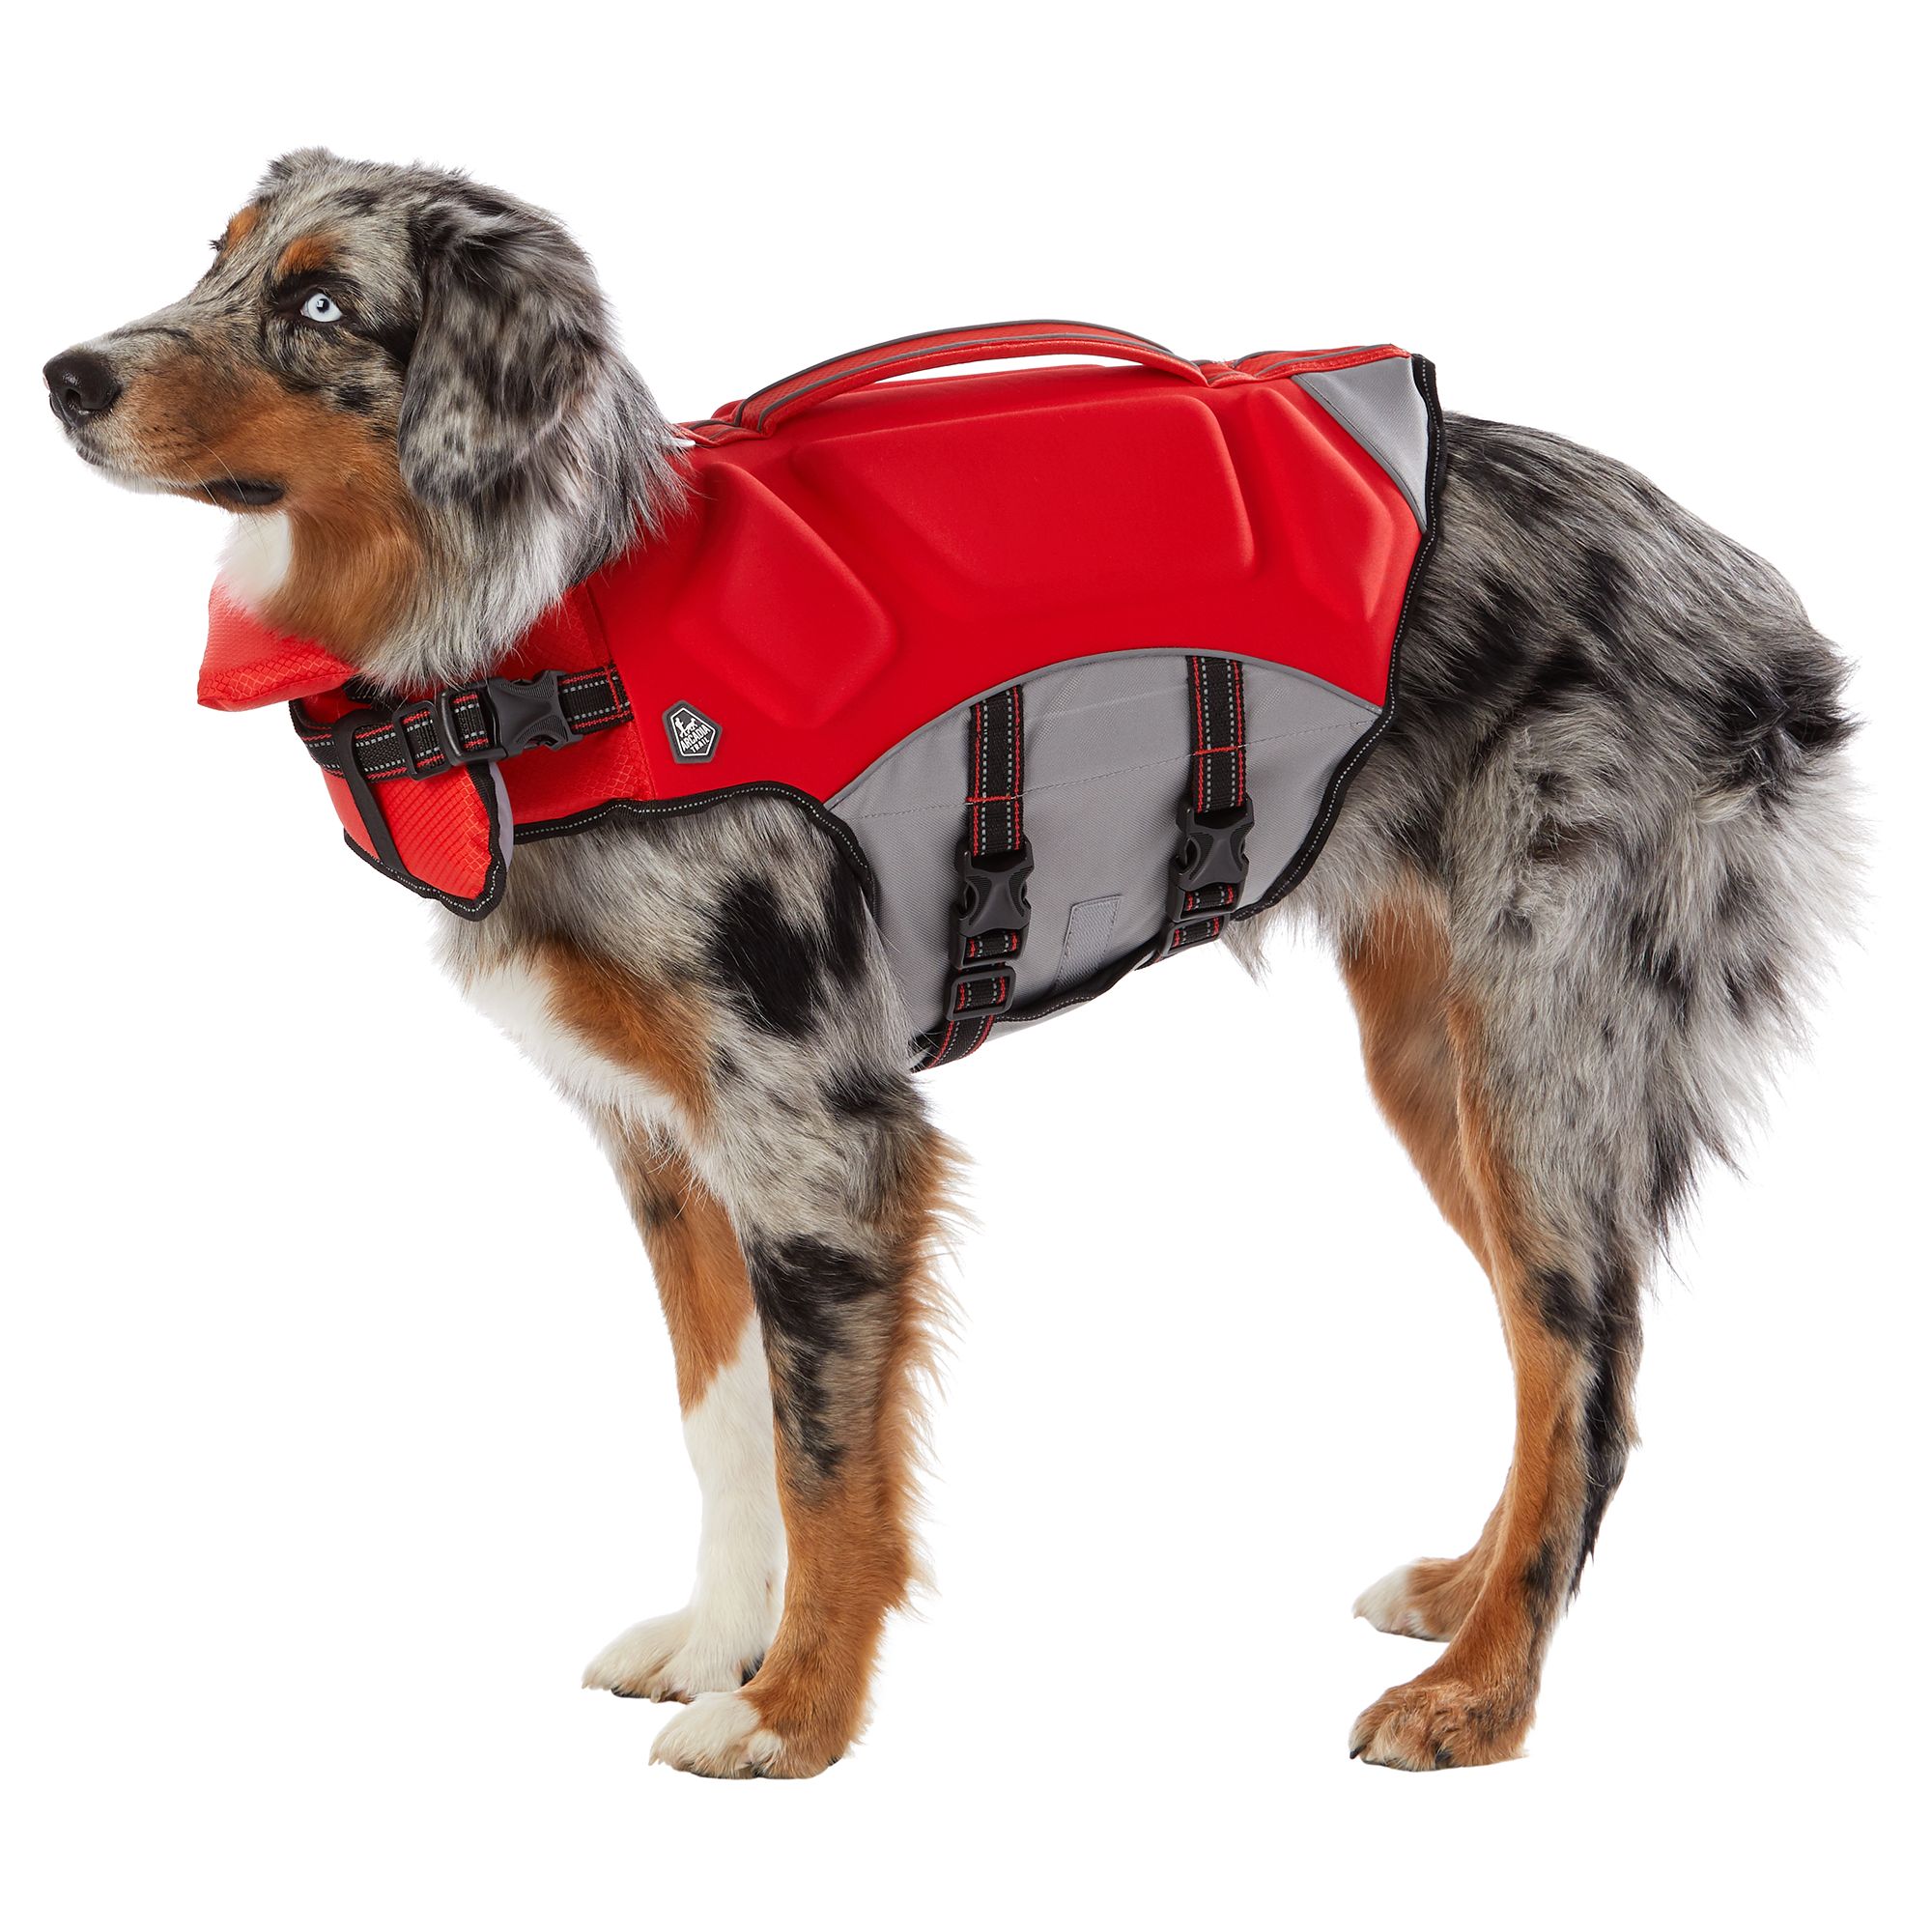 extra small dog life jacket